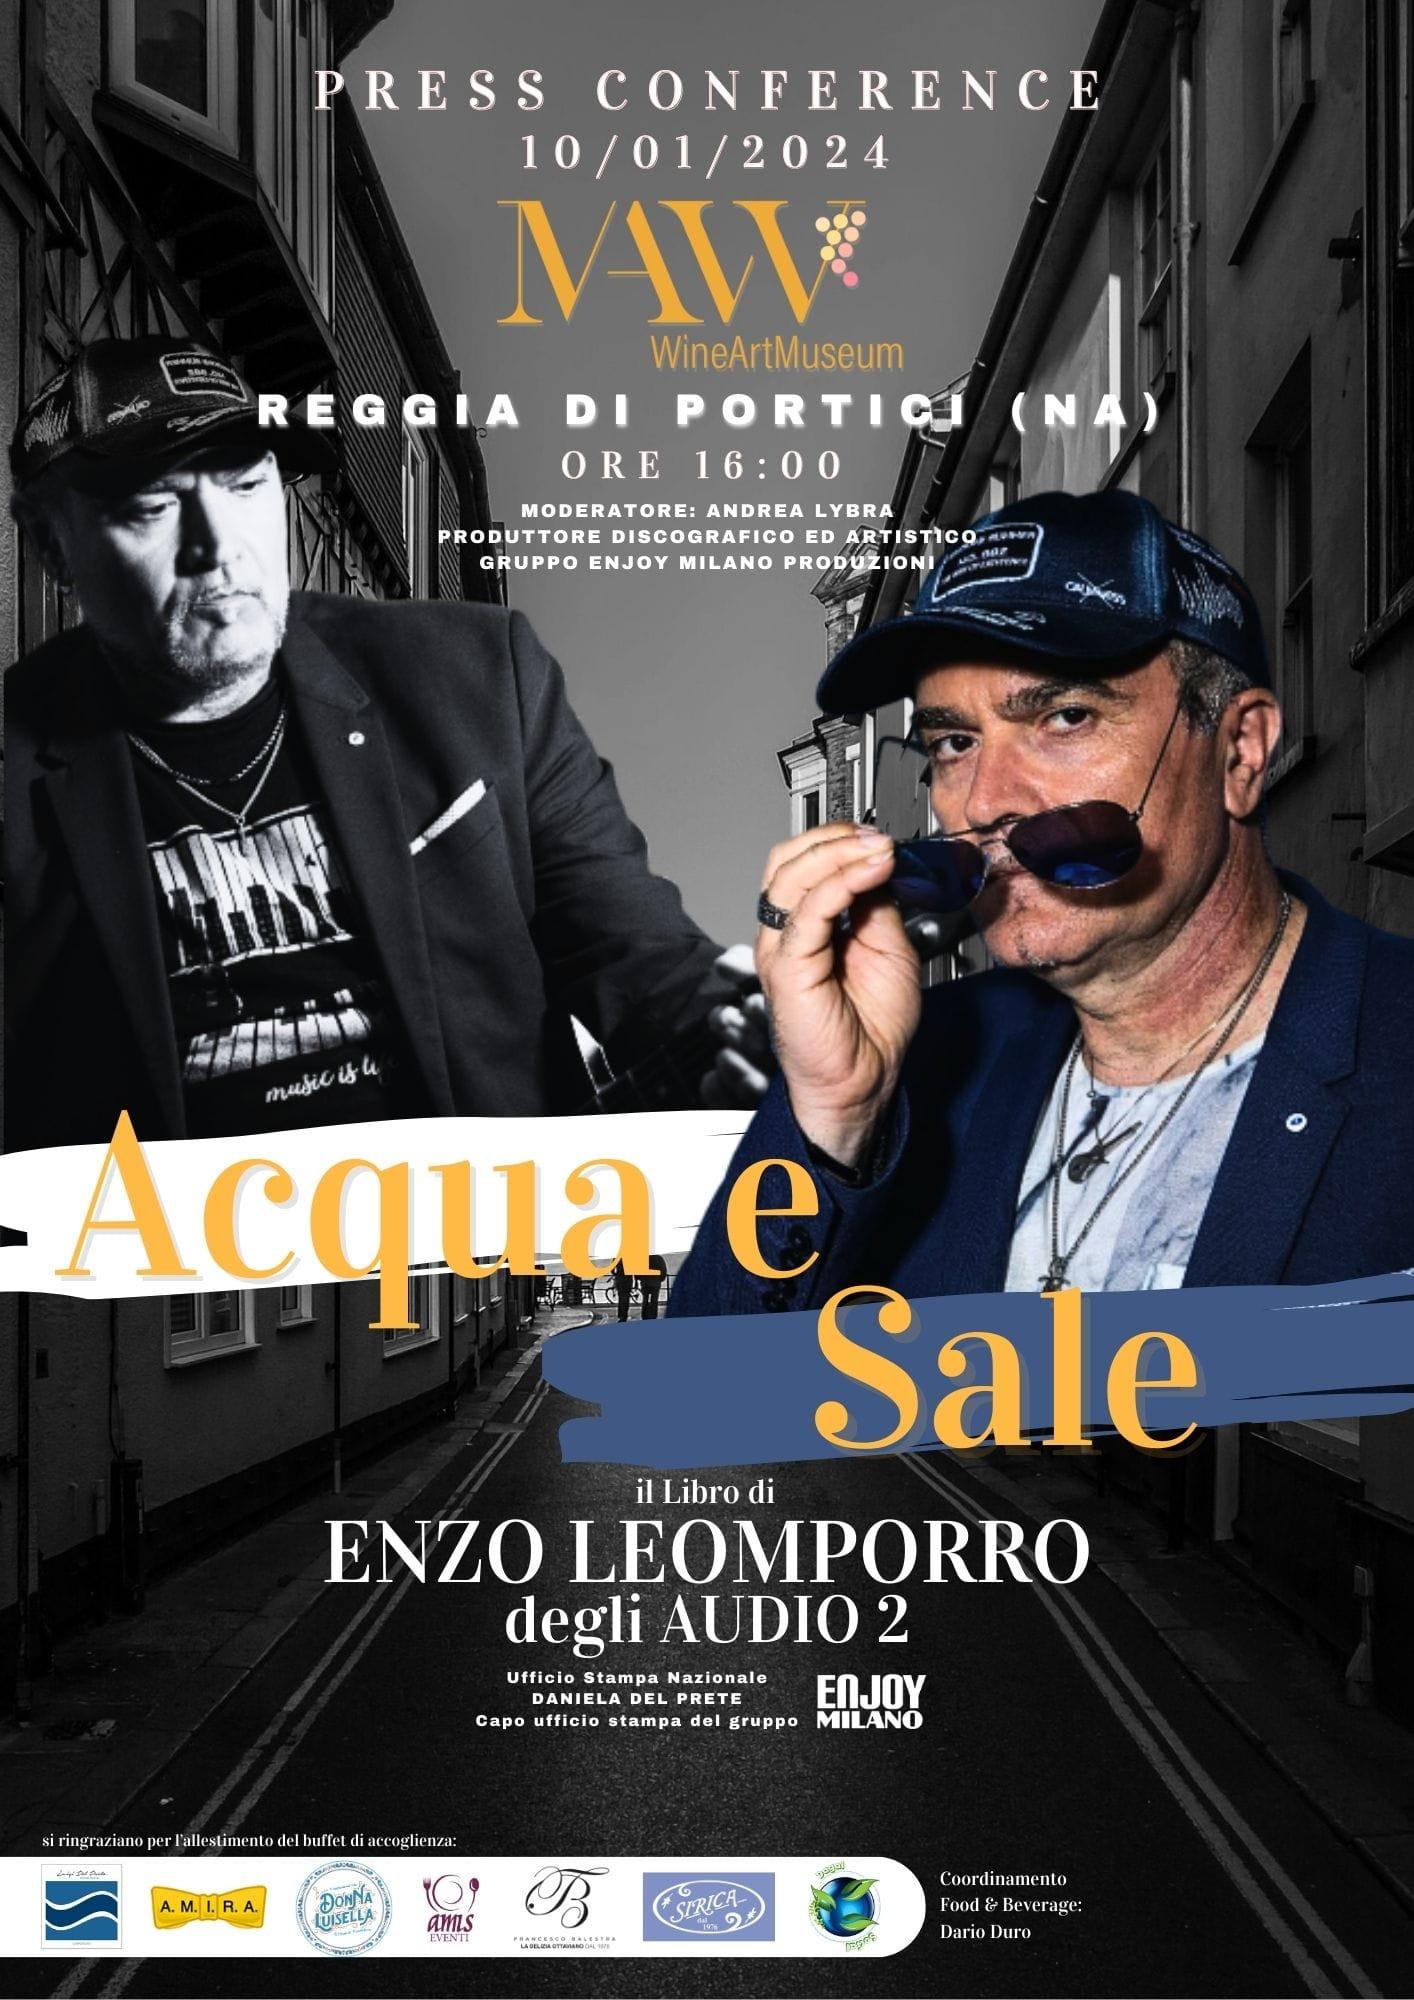 Enzo Leomporro degli Audio2 presenta il libro “Acqua e Sale” al Mavv Wine art Museum| Reggia di Portici